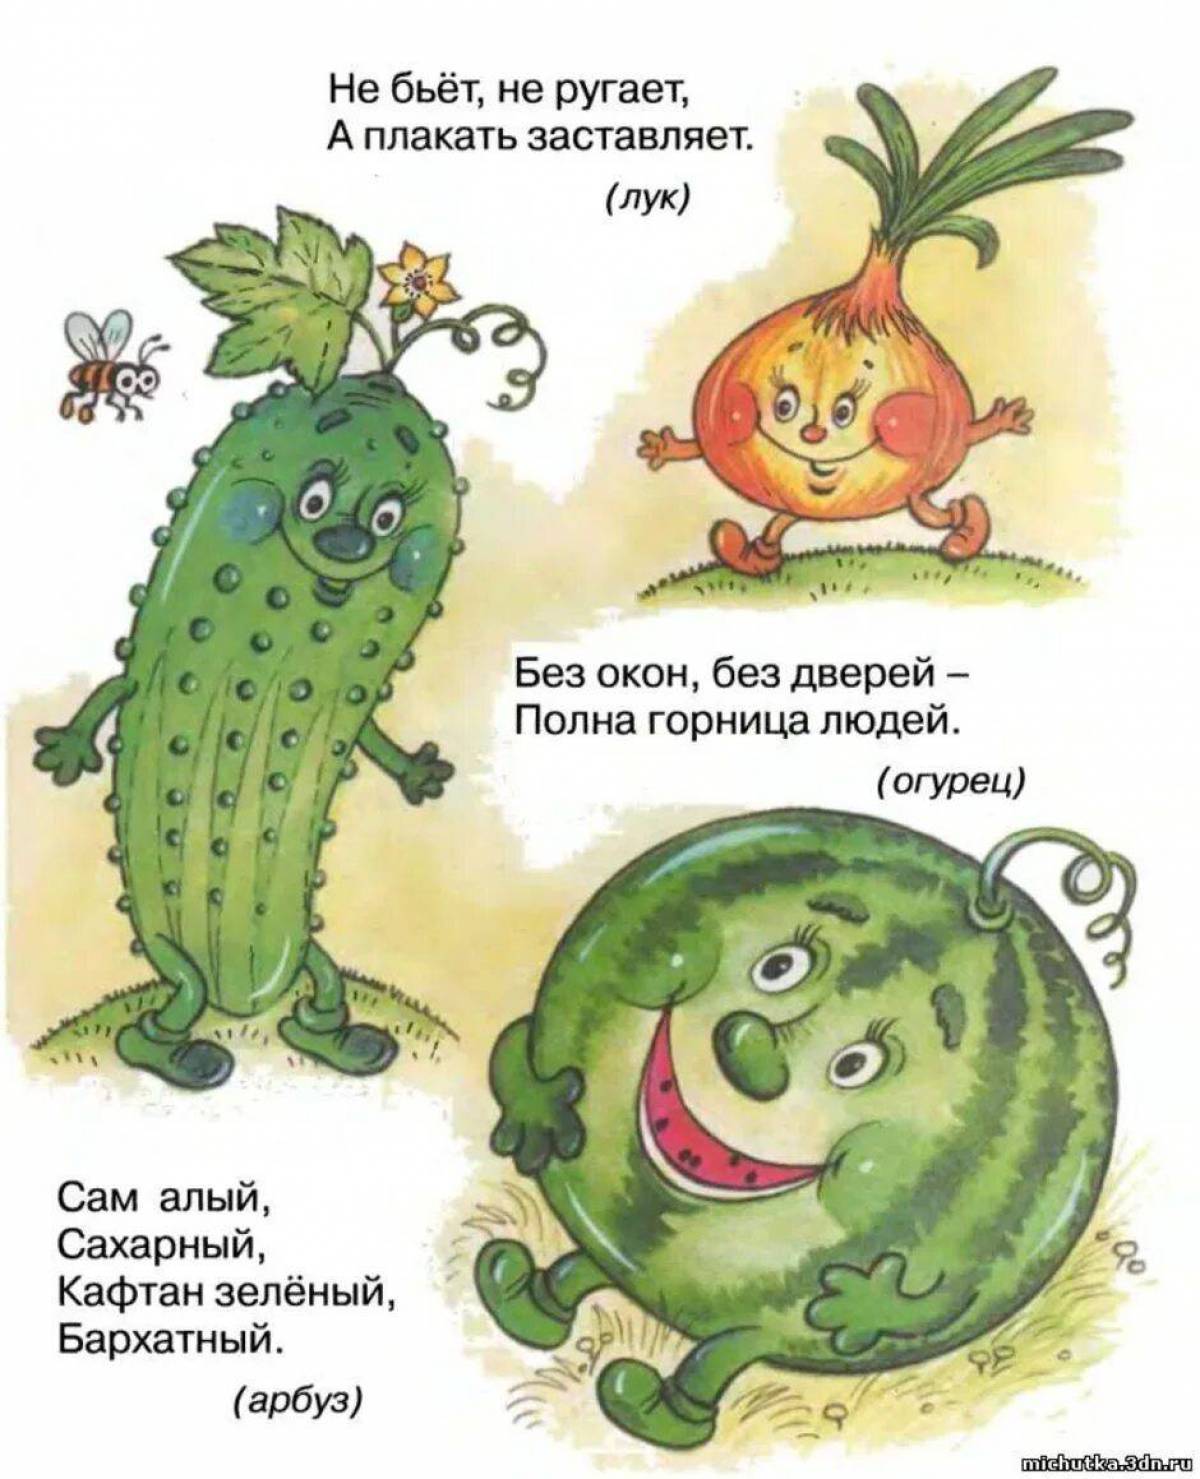 6 загадок про овощи. Загадки для детей. Загадки для детейдетей.. Загадки про овощи. Загадки про овощи для детей.